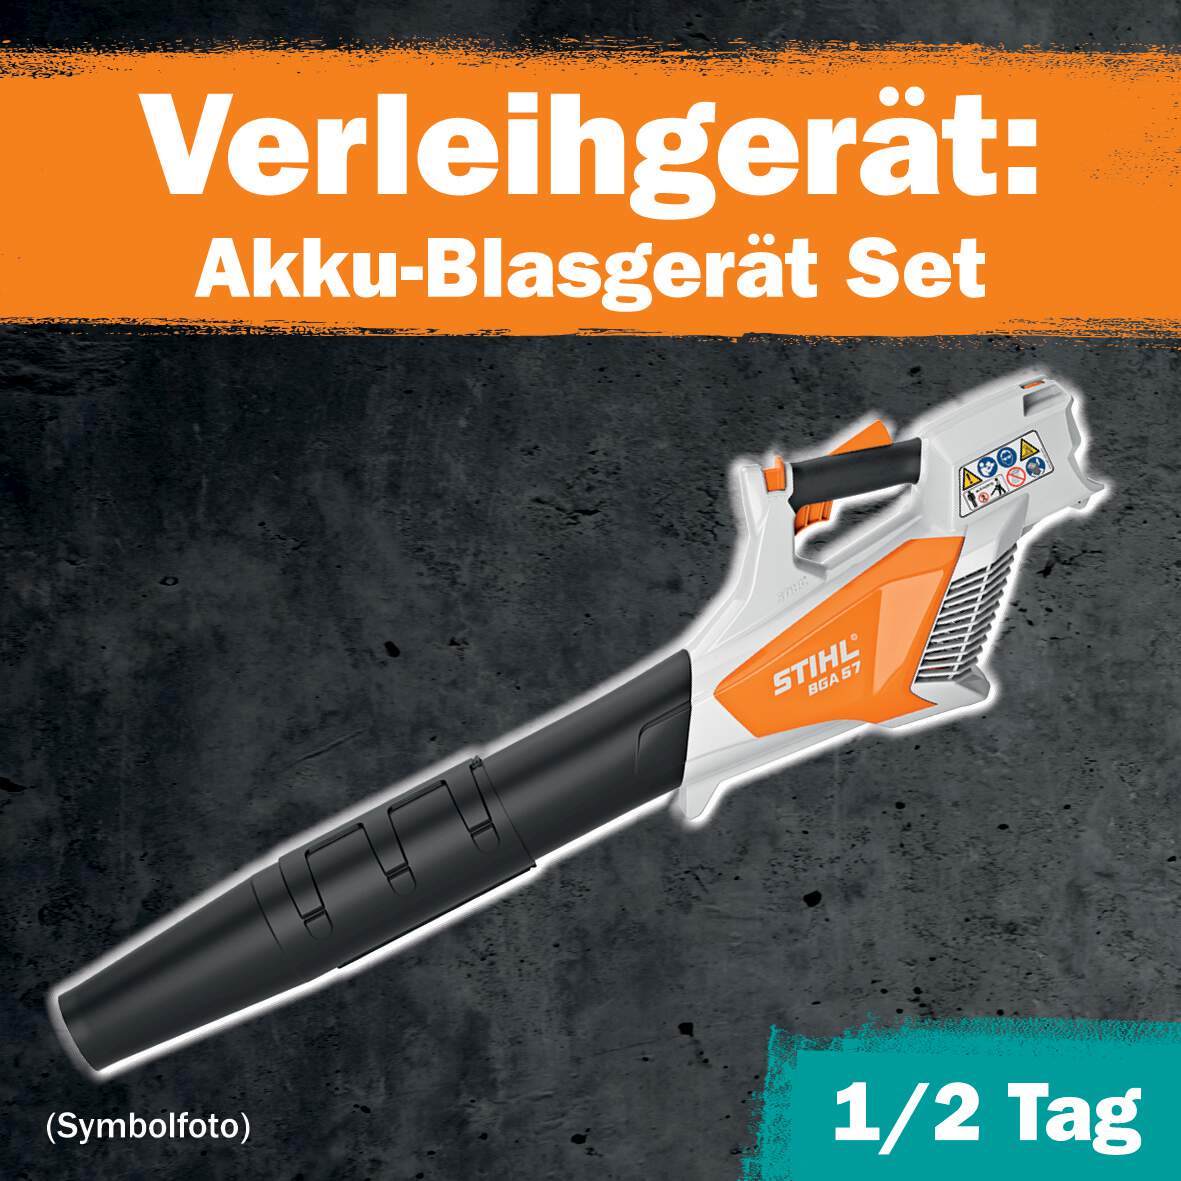 1288702 - Akku-Blasgerät Set 1/2 Tag Leihdauer